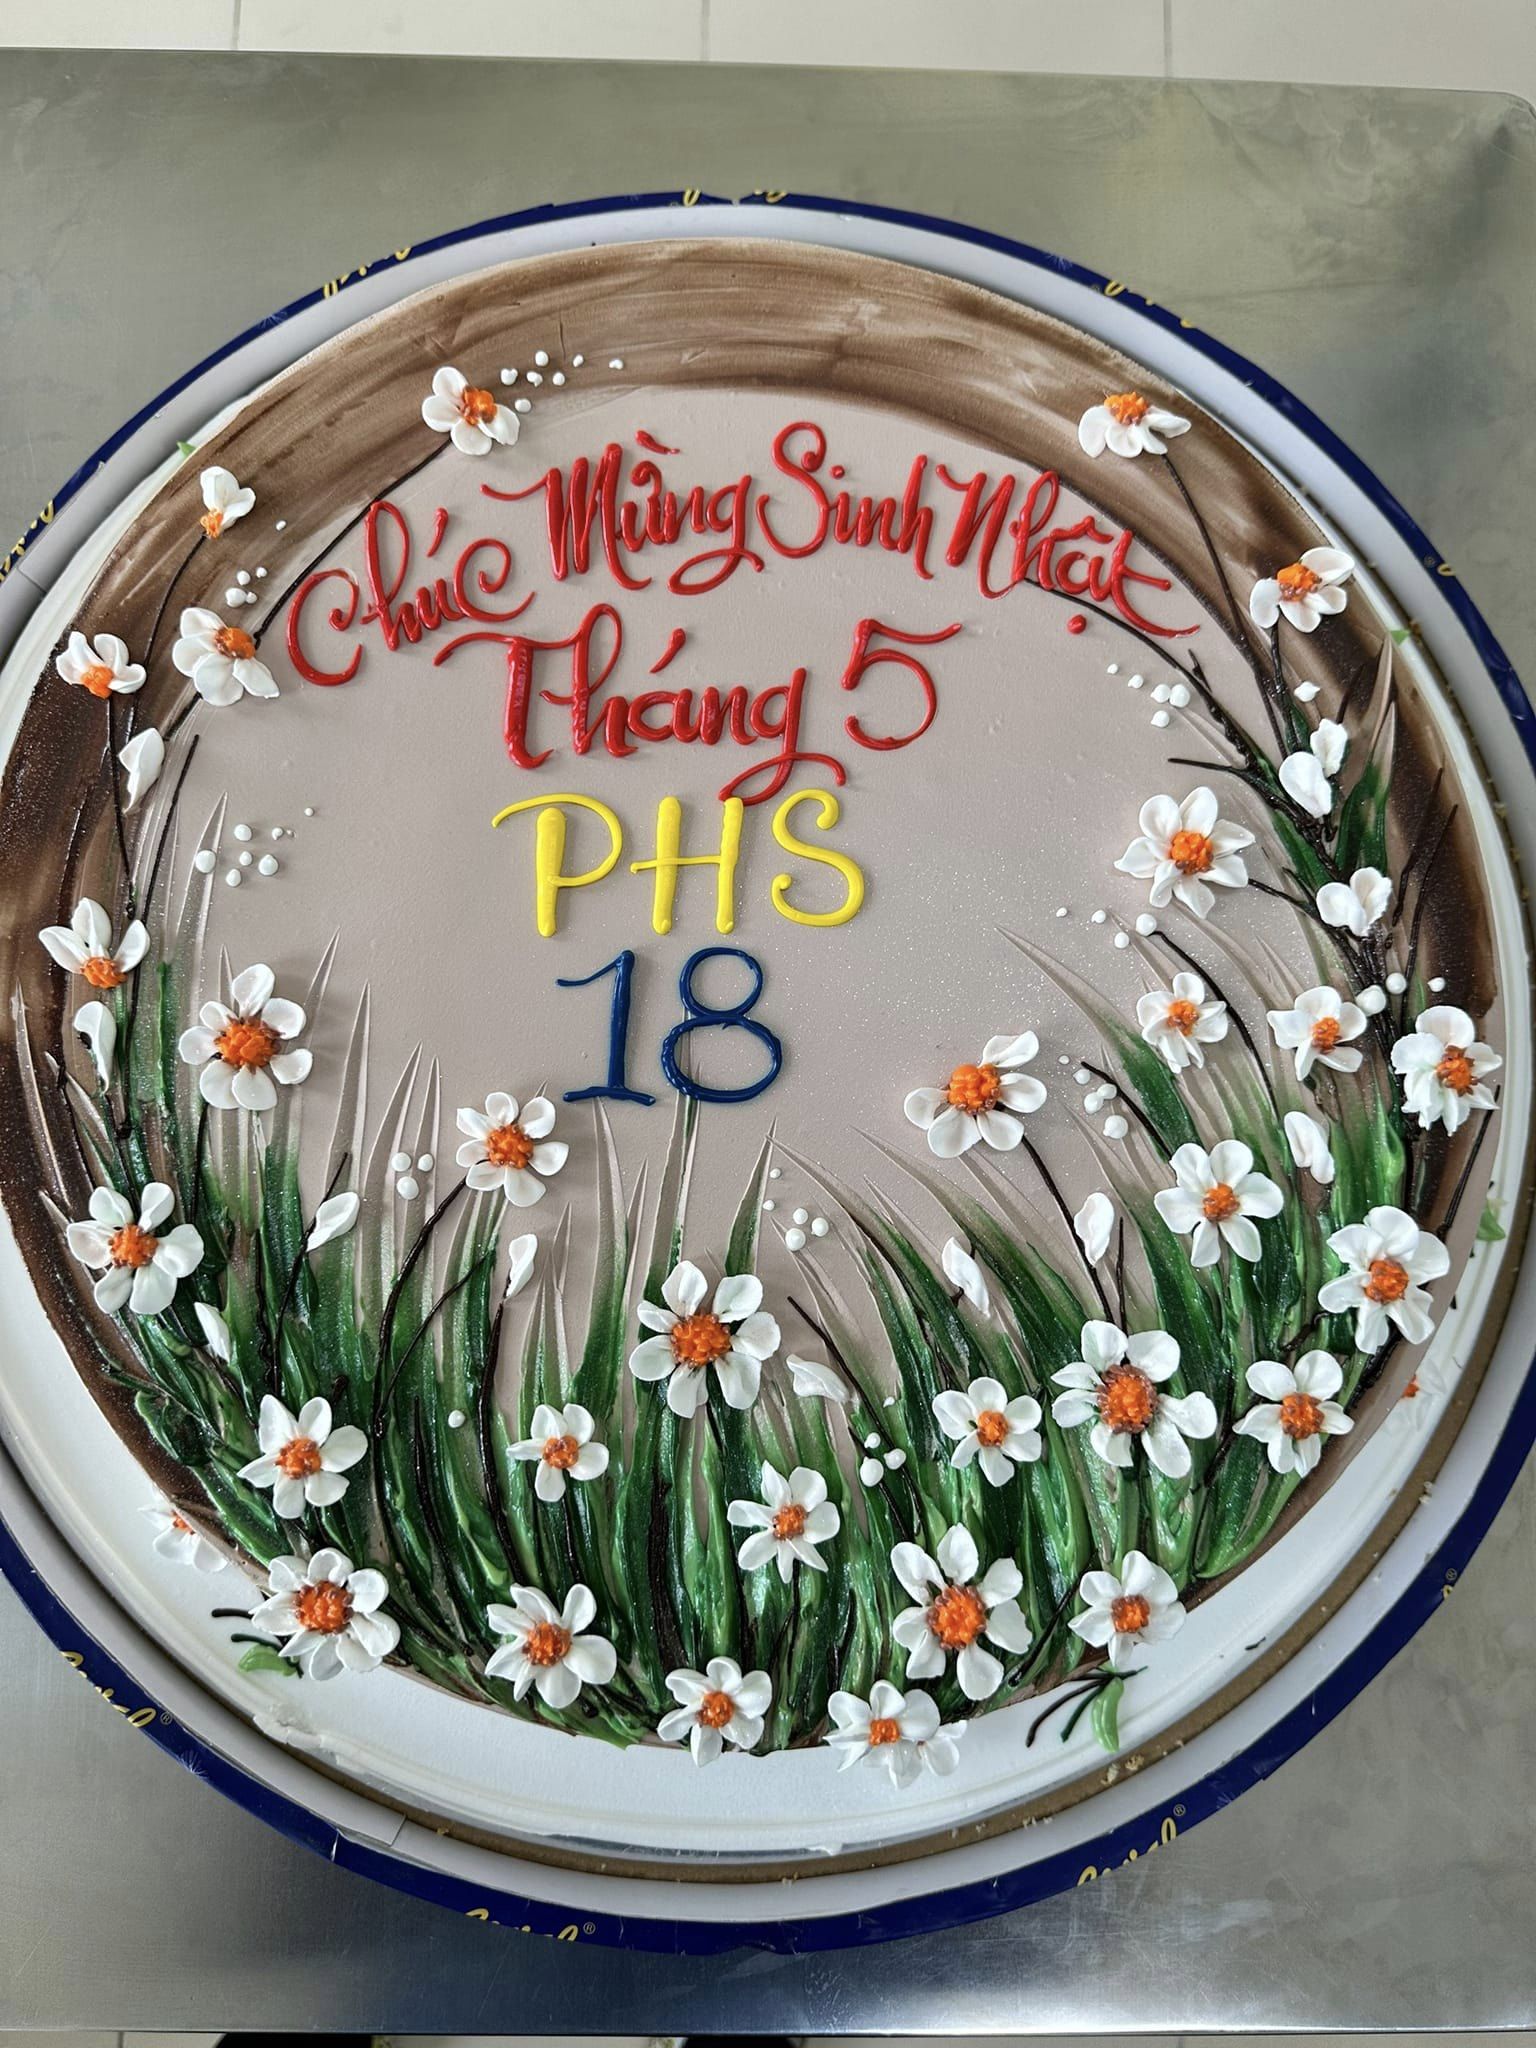 Chúc mừng các bạn sinh nhật tháng 5! Chúc mừng PHS 18 tuổi!